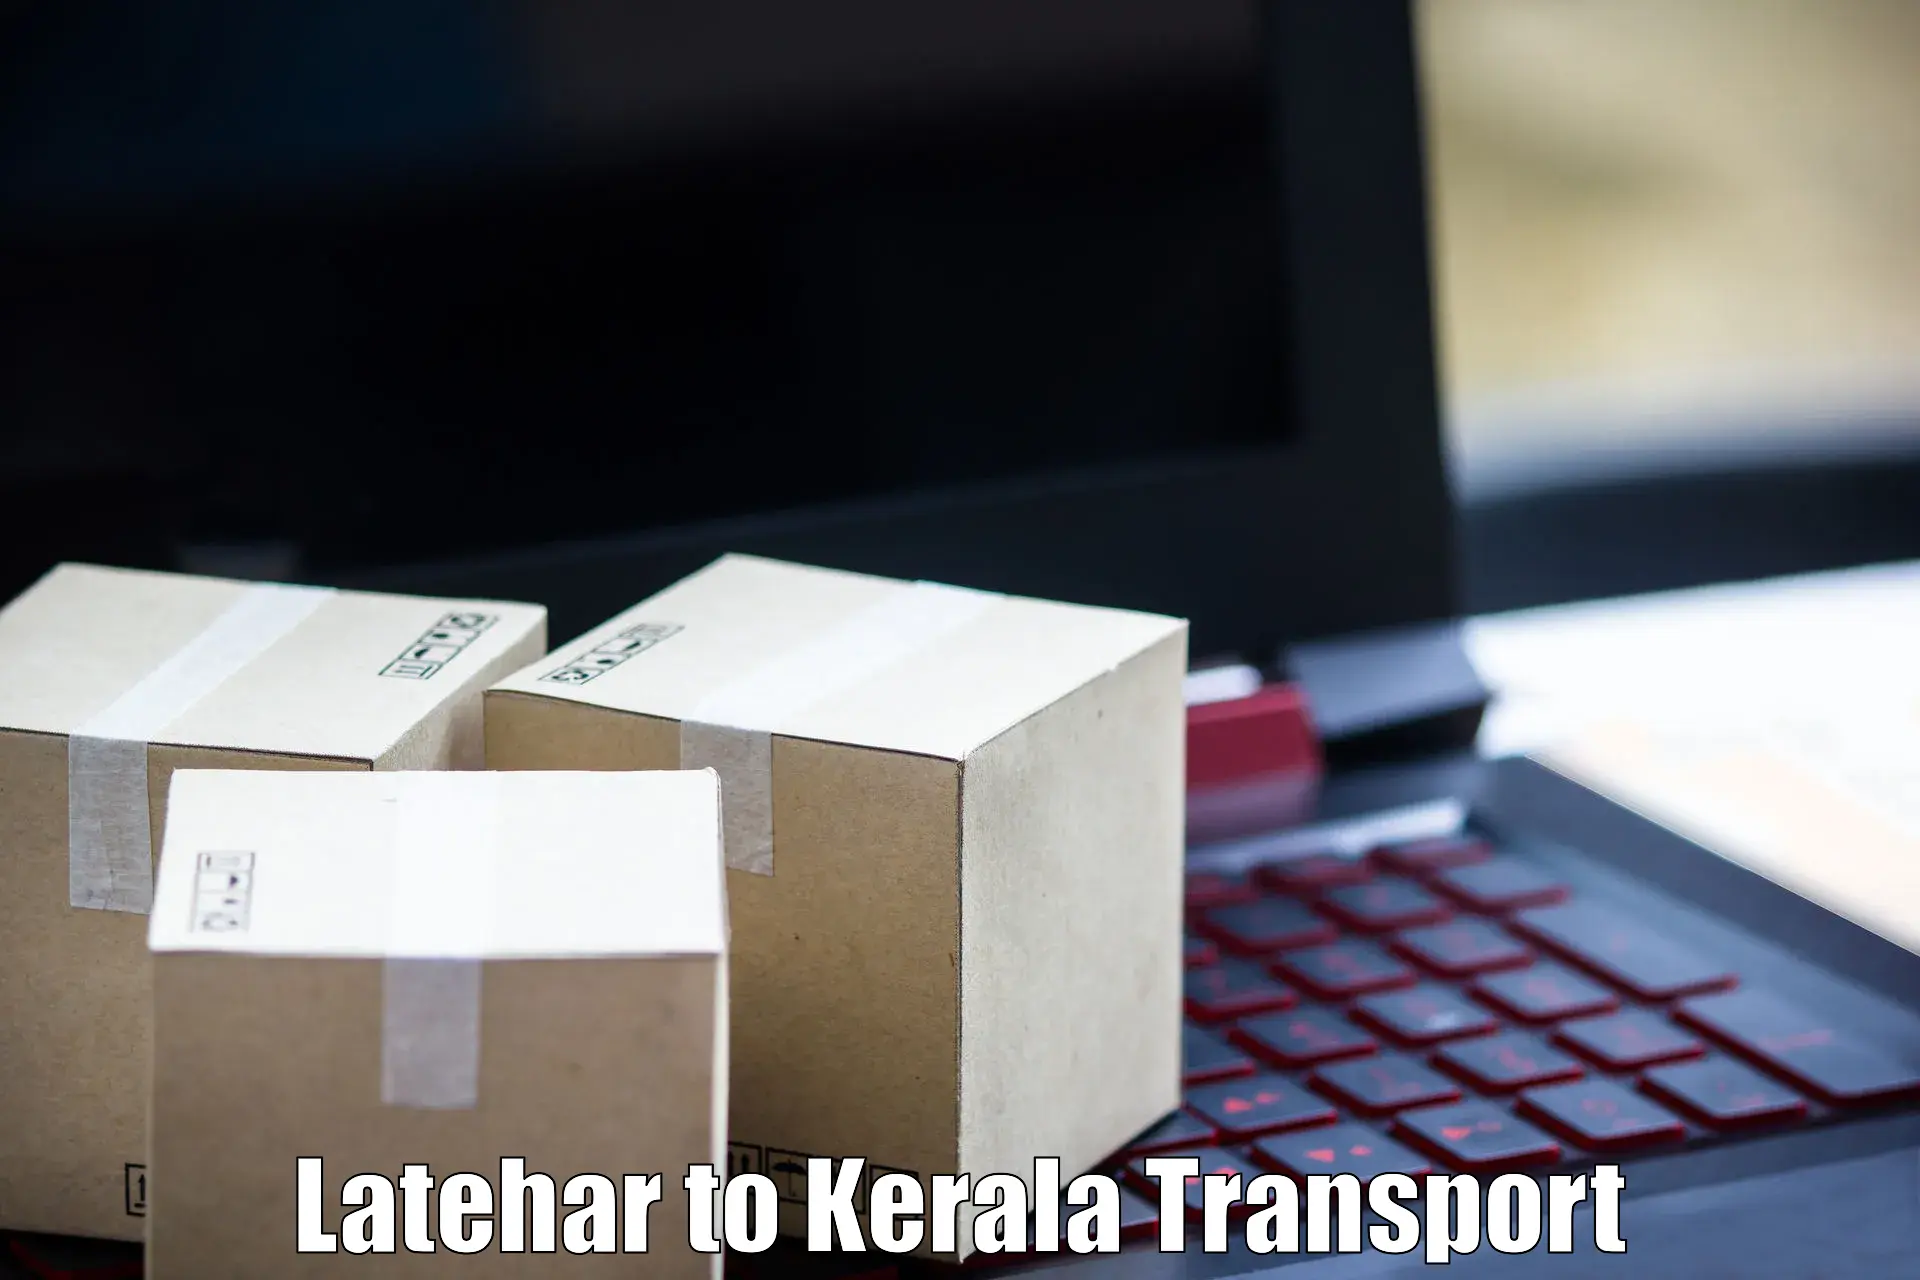 Bike transport service Latehar to Kattappana